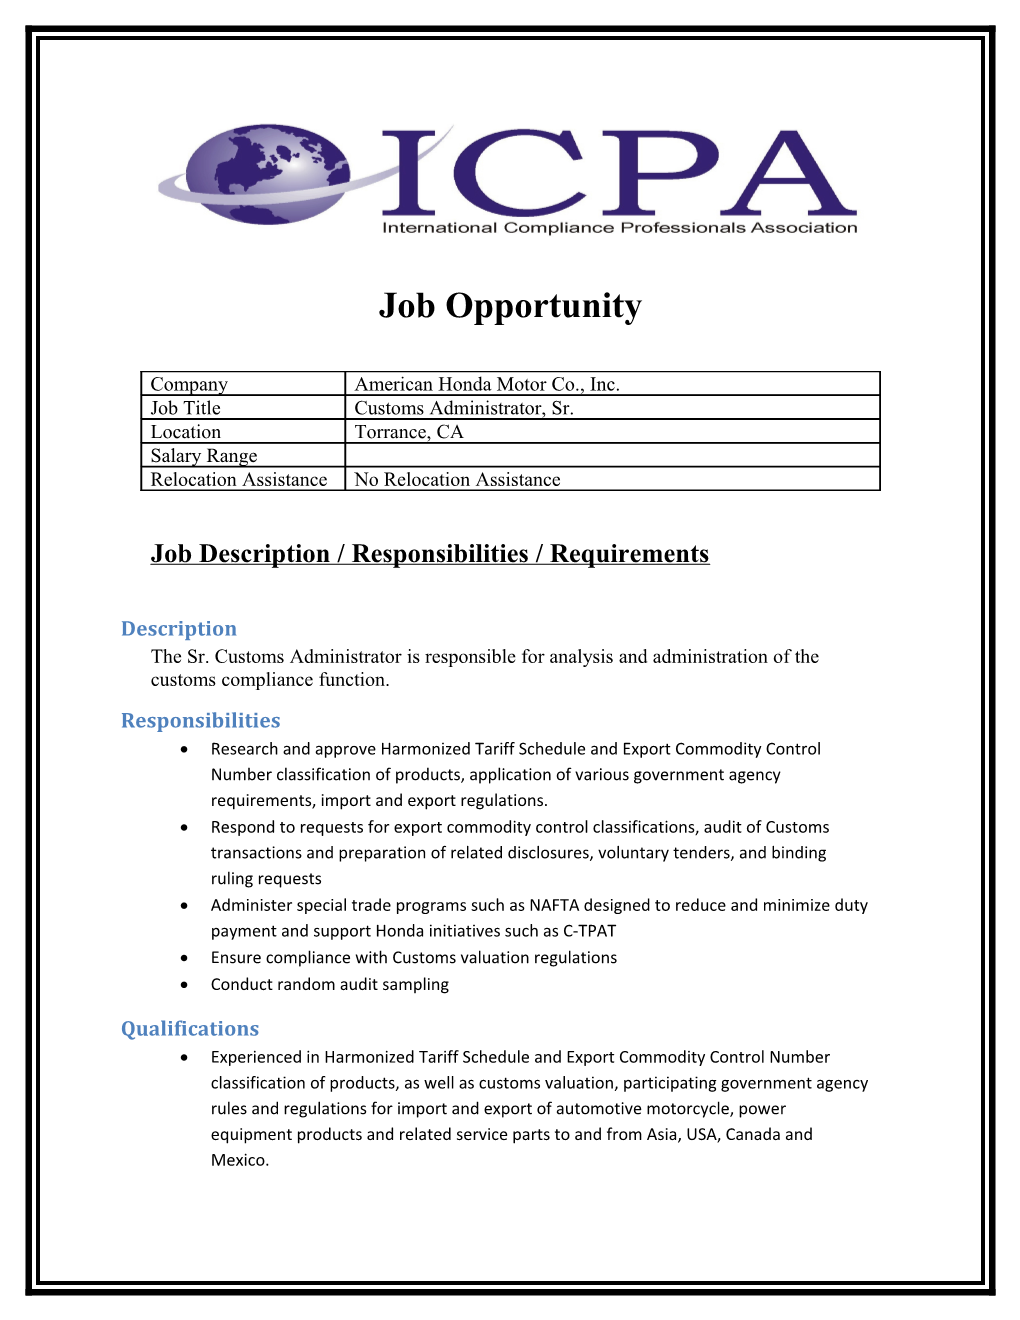 Job Description / Responsibilities / Requirements